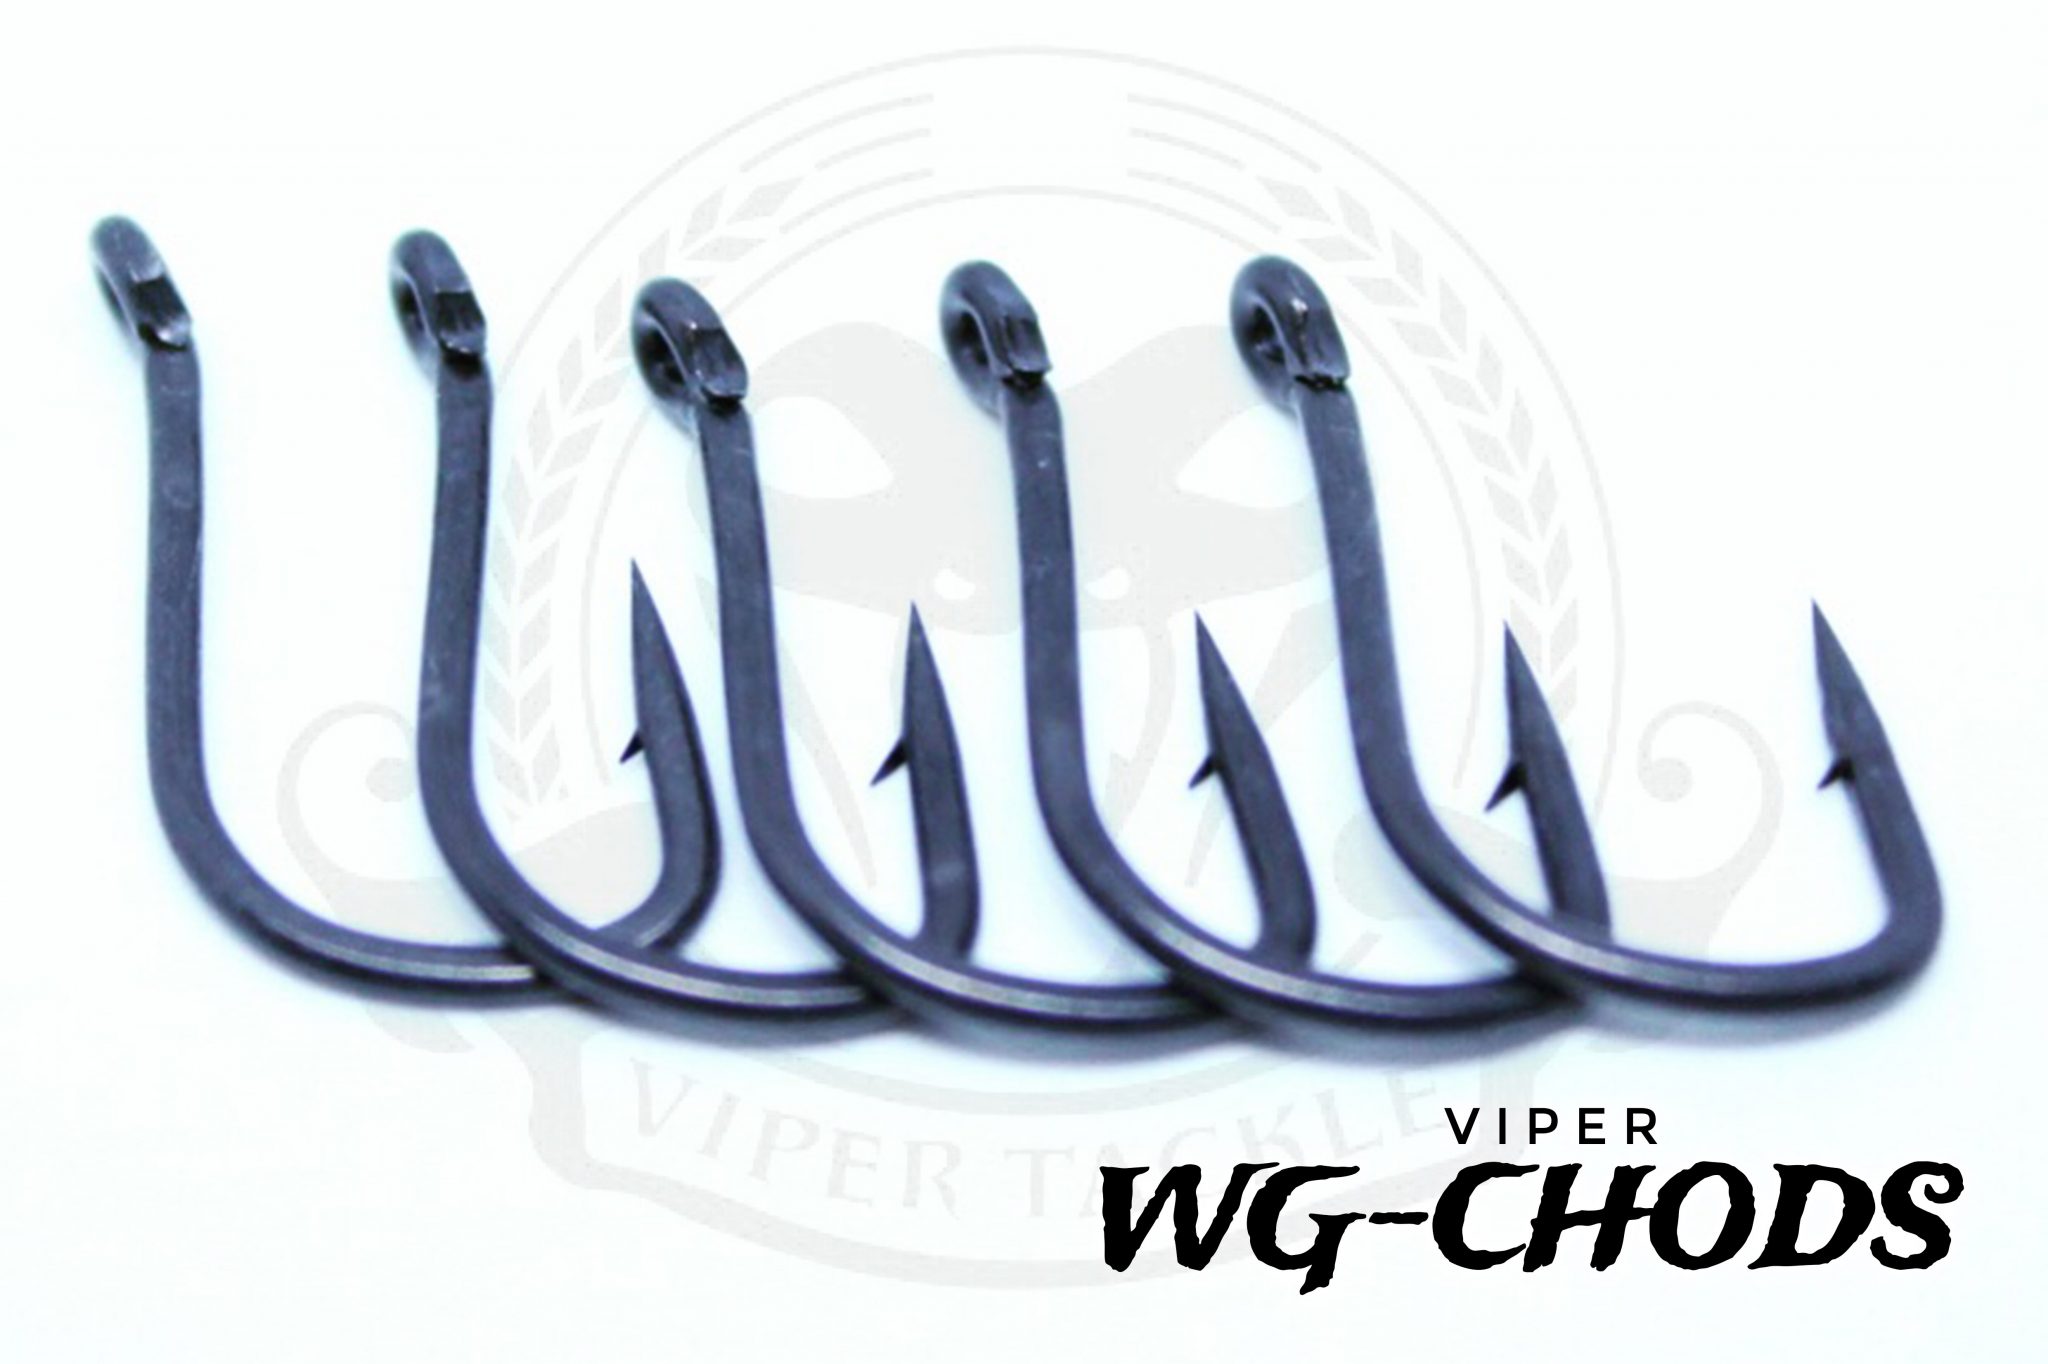 Wide Gape Choddy - Viper Tackle